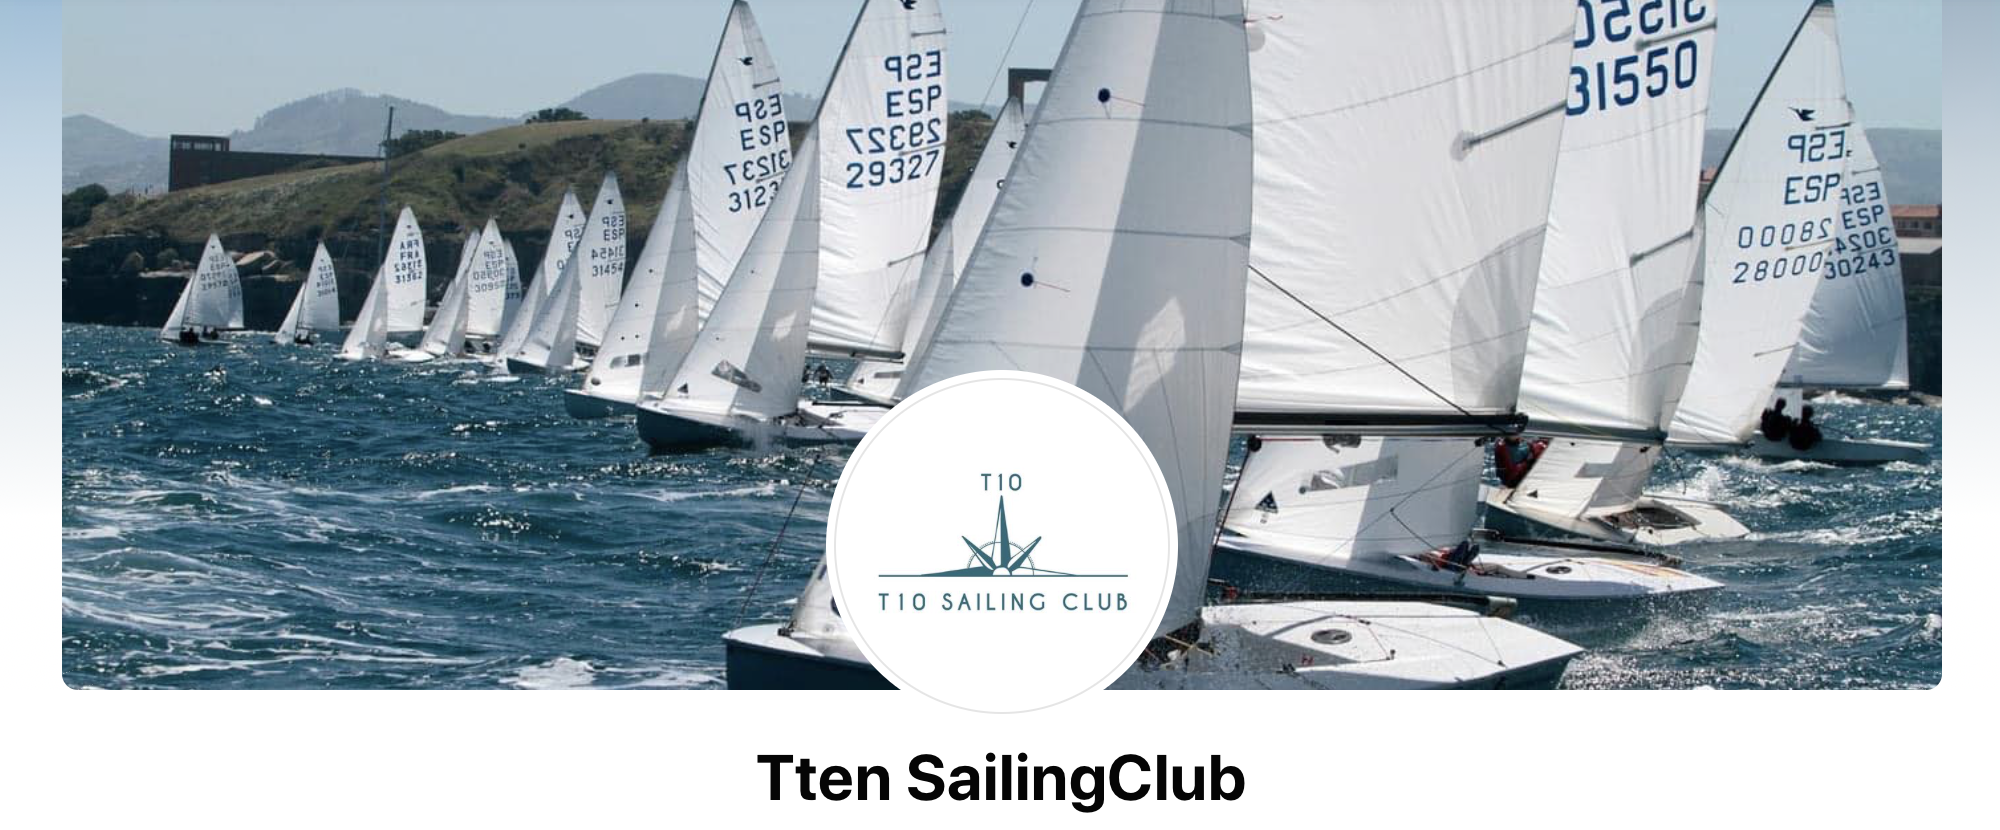 Tten Sailing Club Image